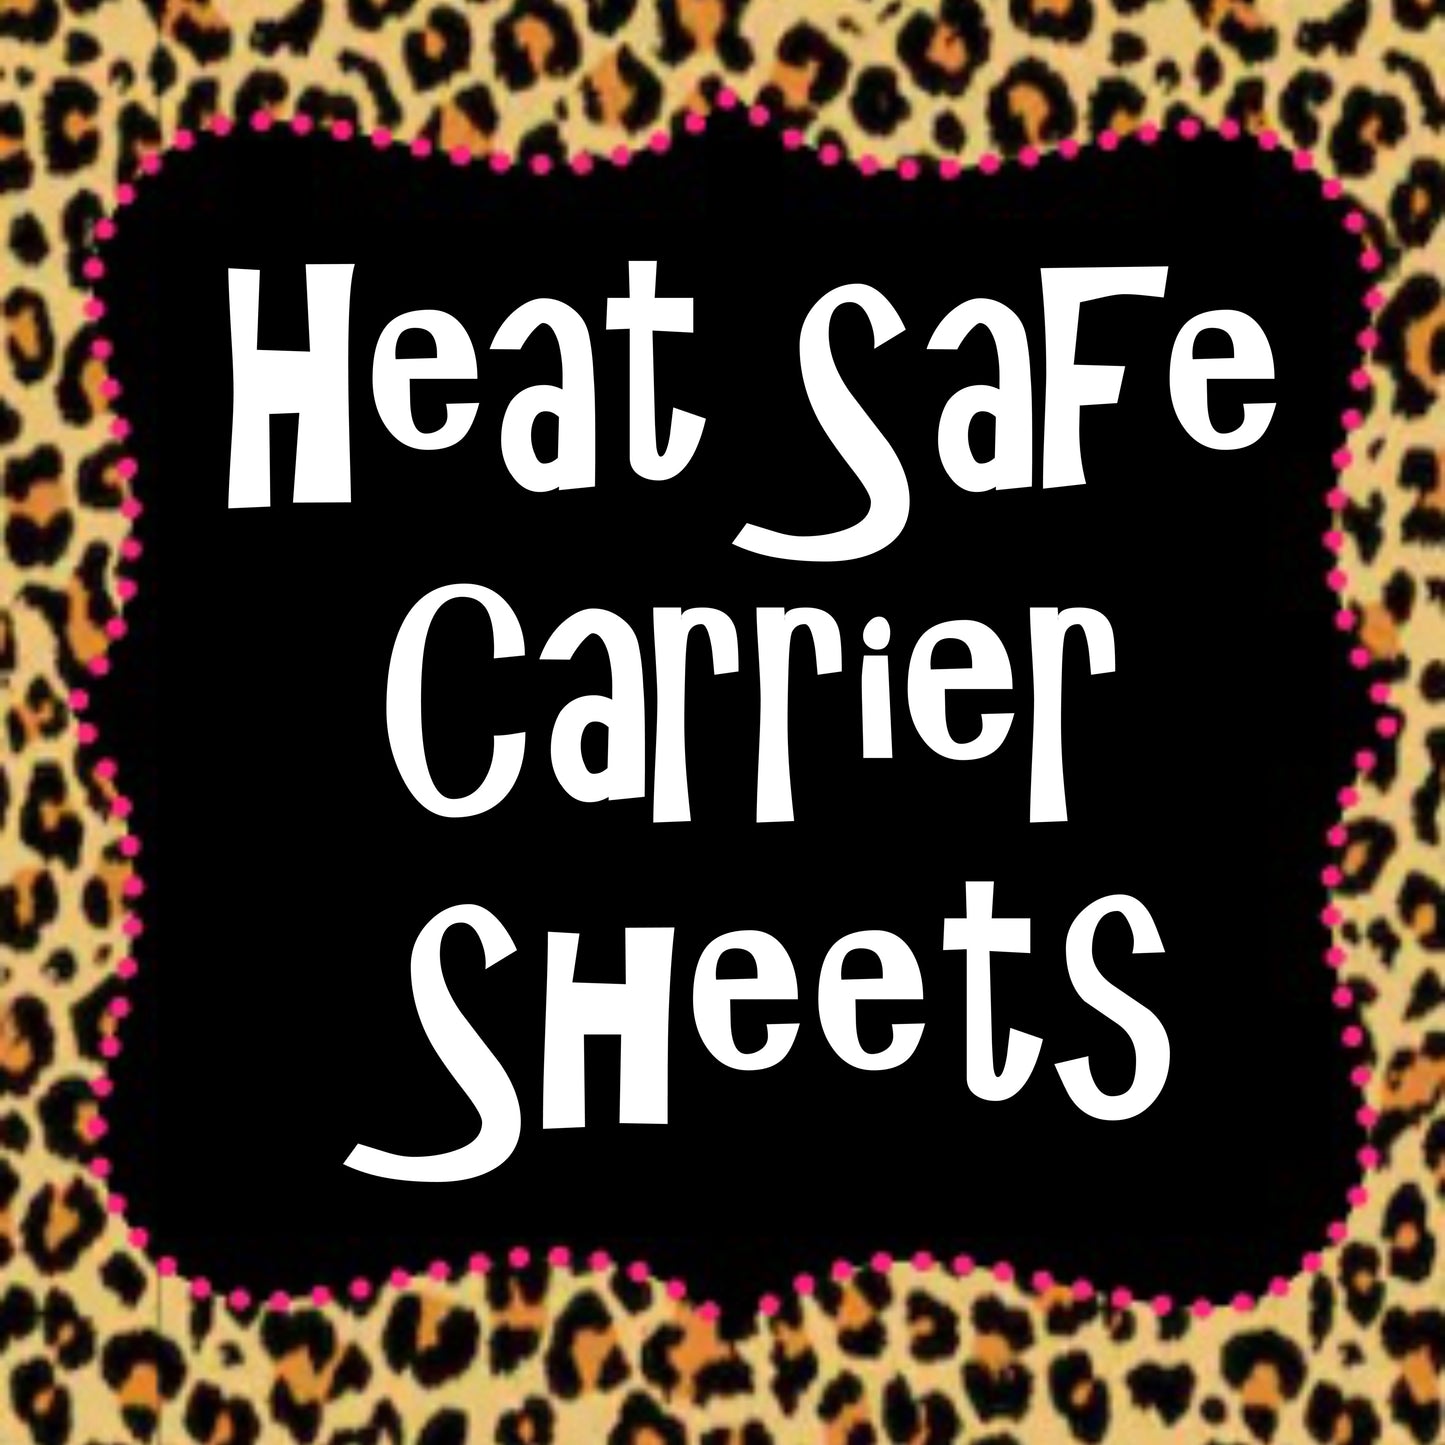 Heat Safe Carrier Sheet